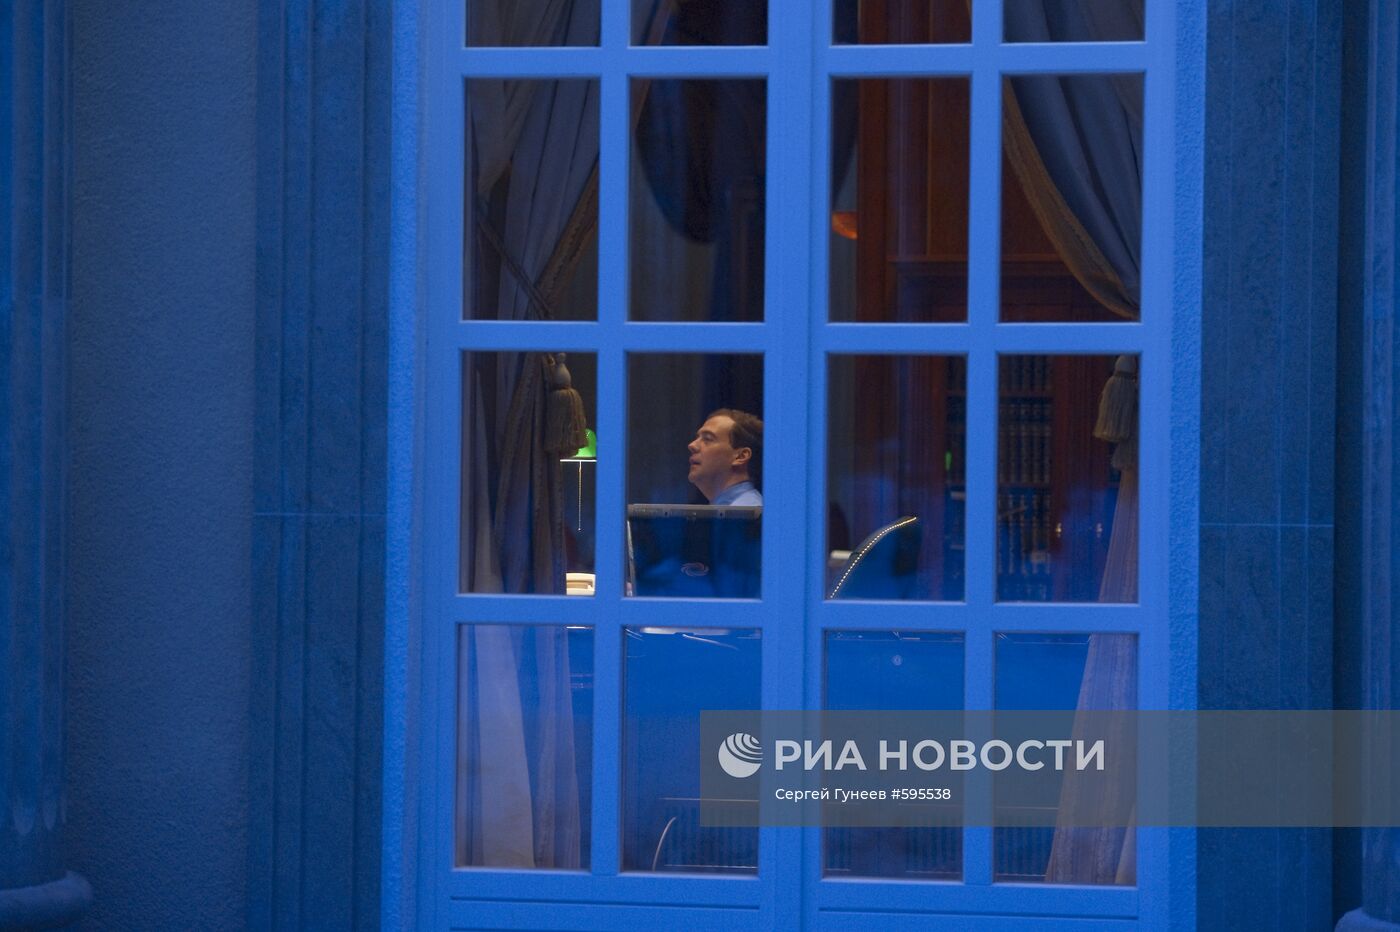 Д.Медведев в рабочем кабинете